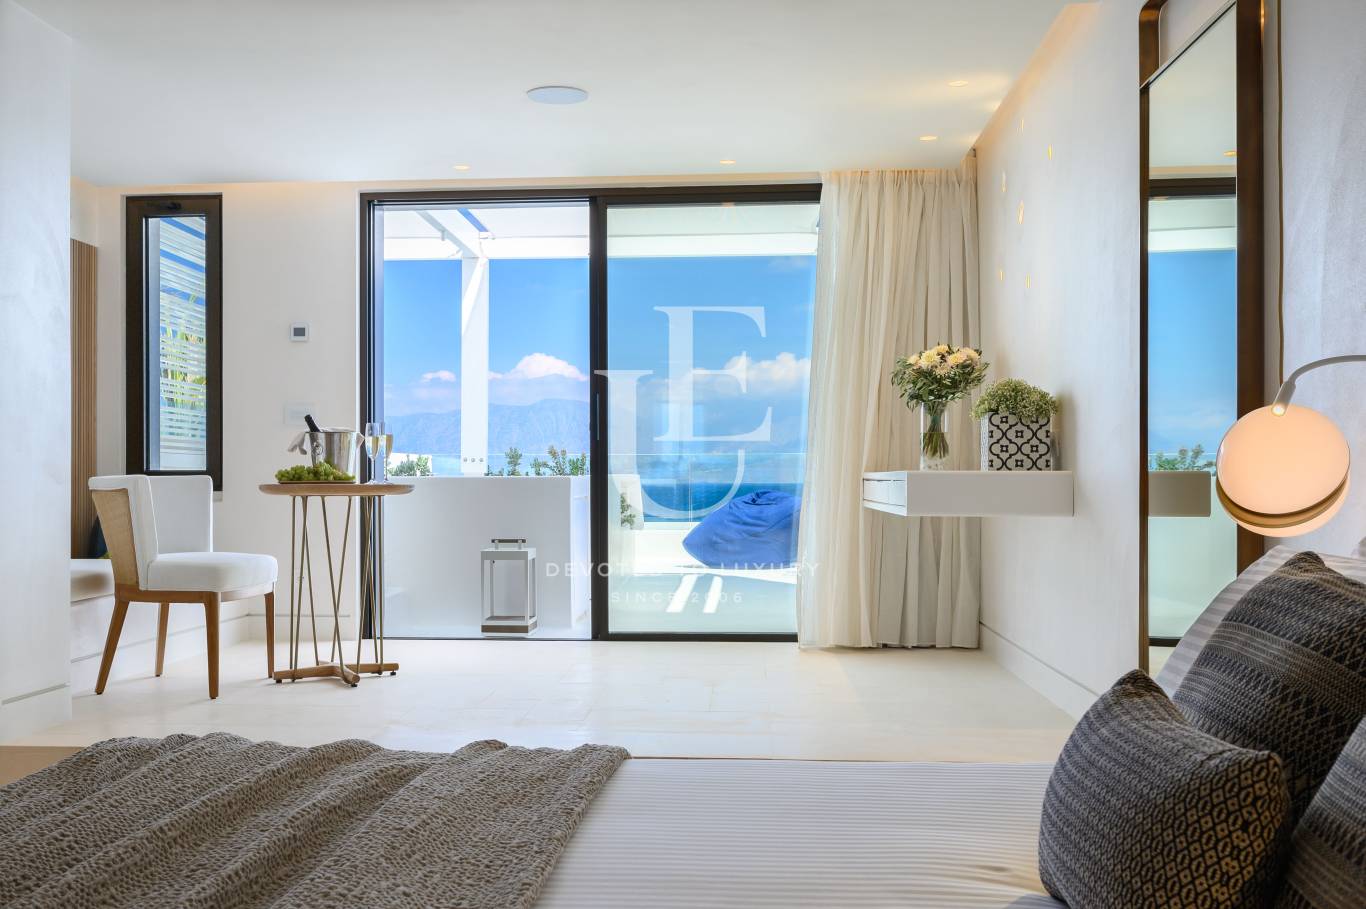 Хотел / Apartment house за продажба в остров Крит,  - код на имота: N21077 - image 6